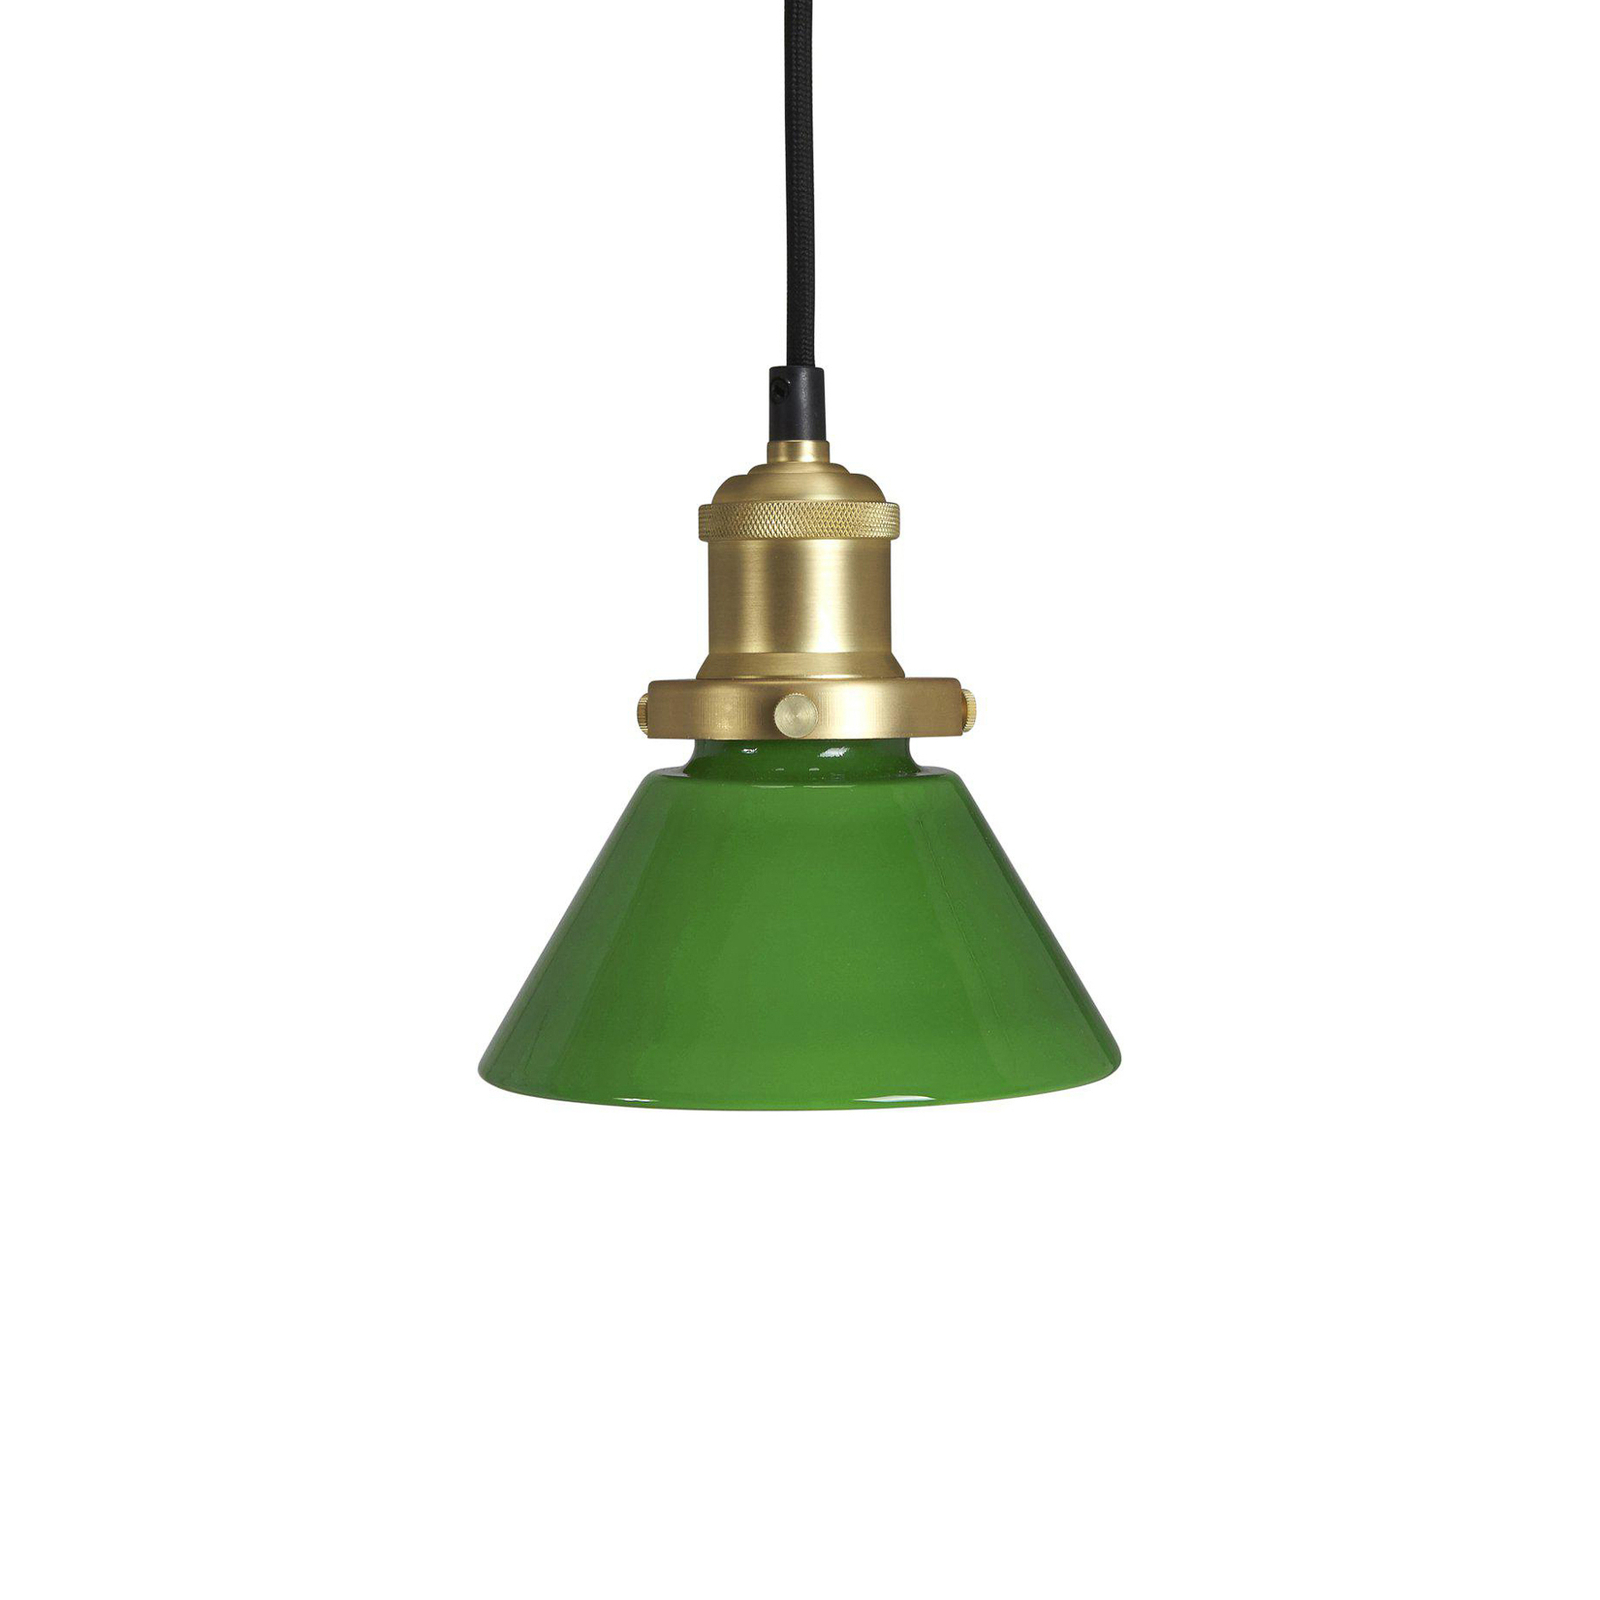 PR Home hanglamp August, groen, Ø 15 cm